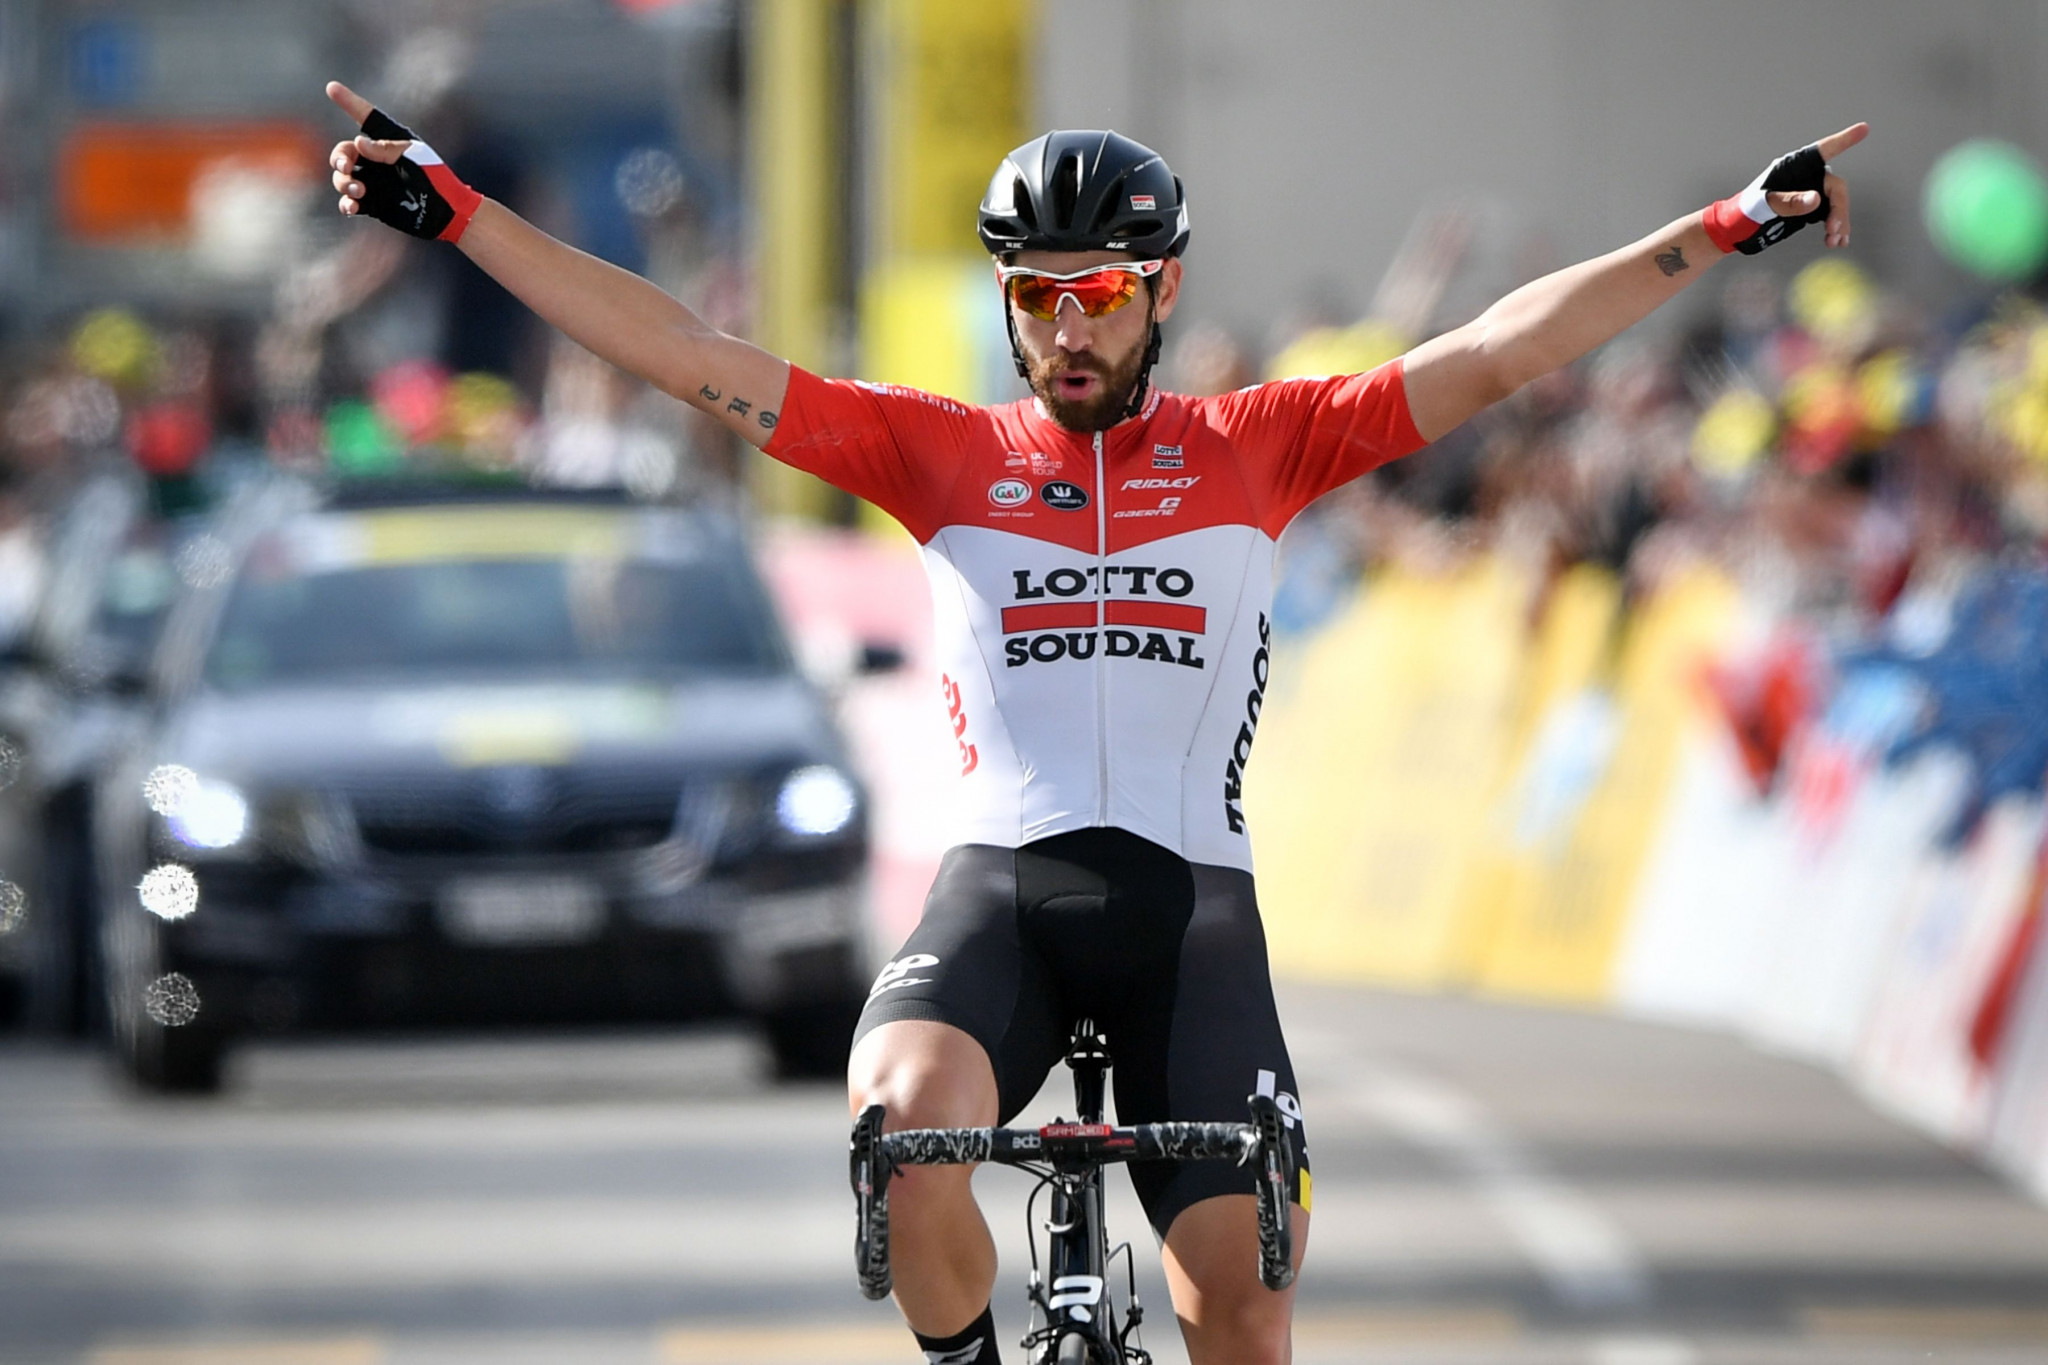 De Gendt breaks clear to claim solo Tour de Romandie stage win